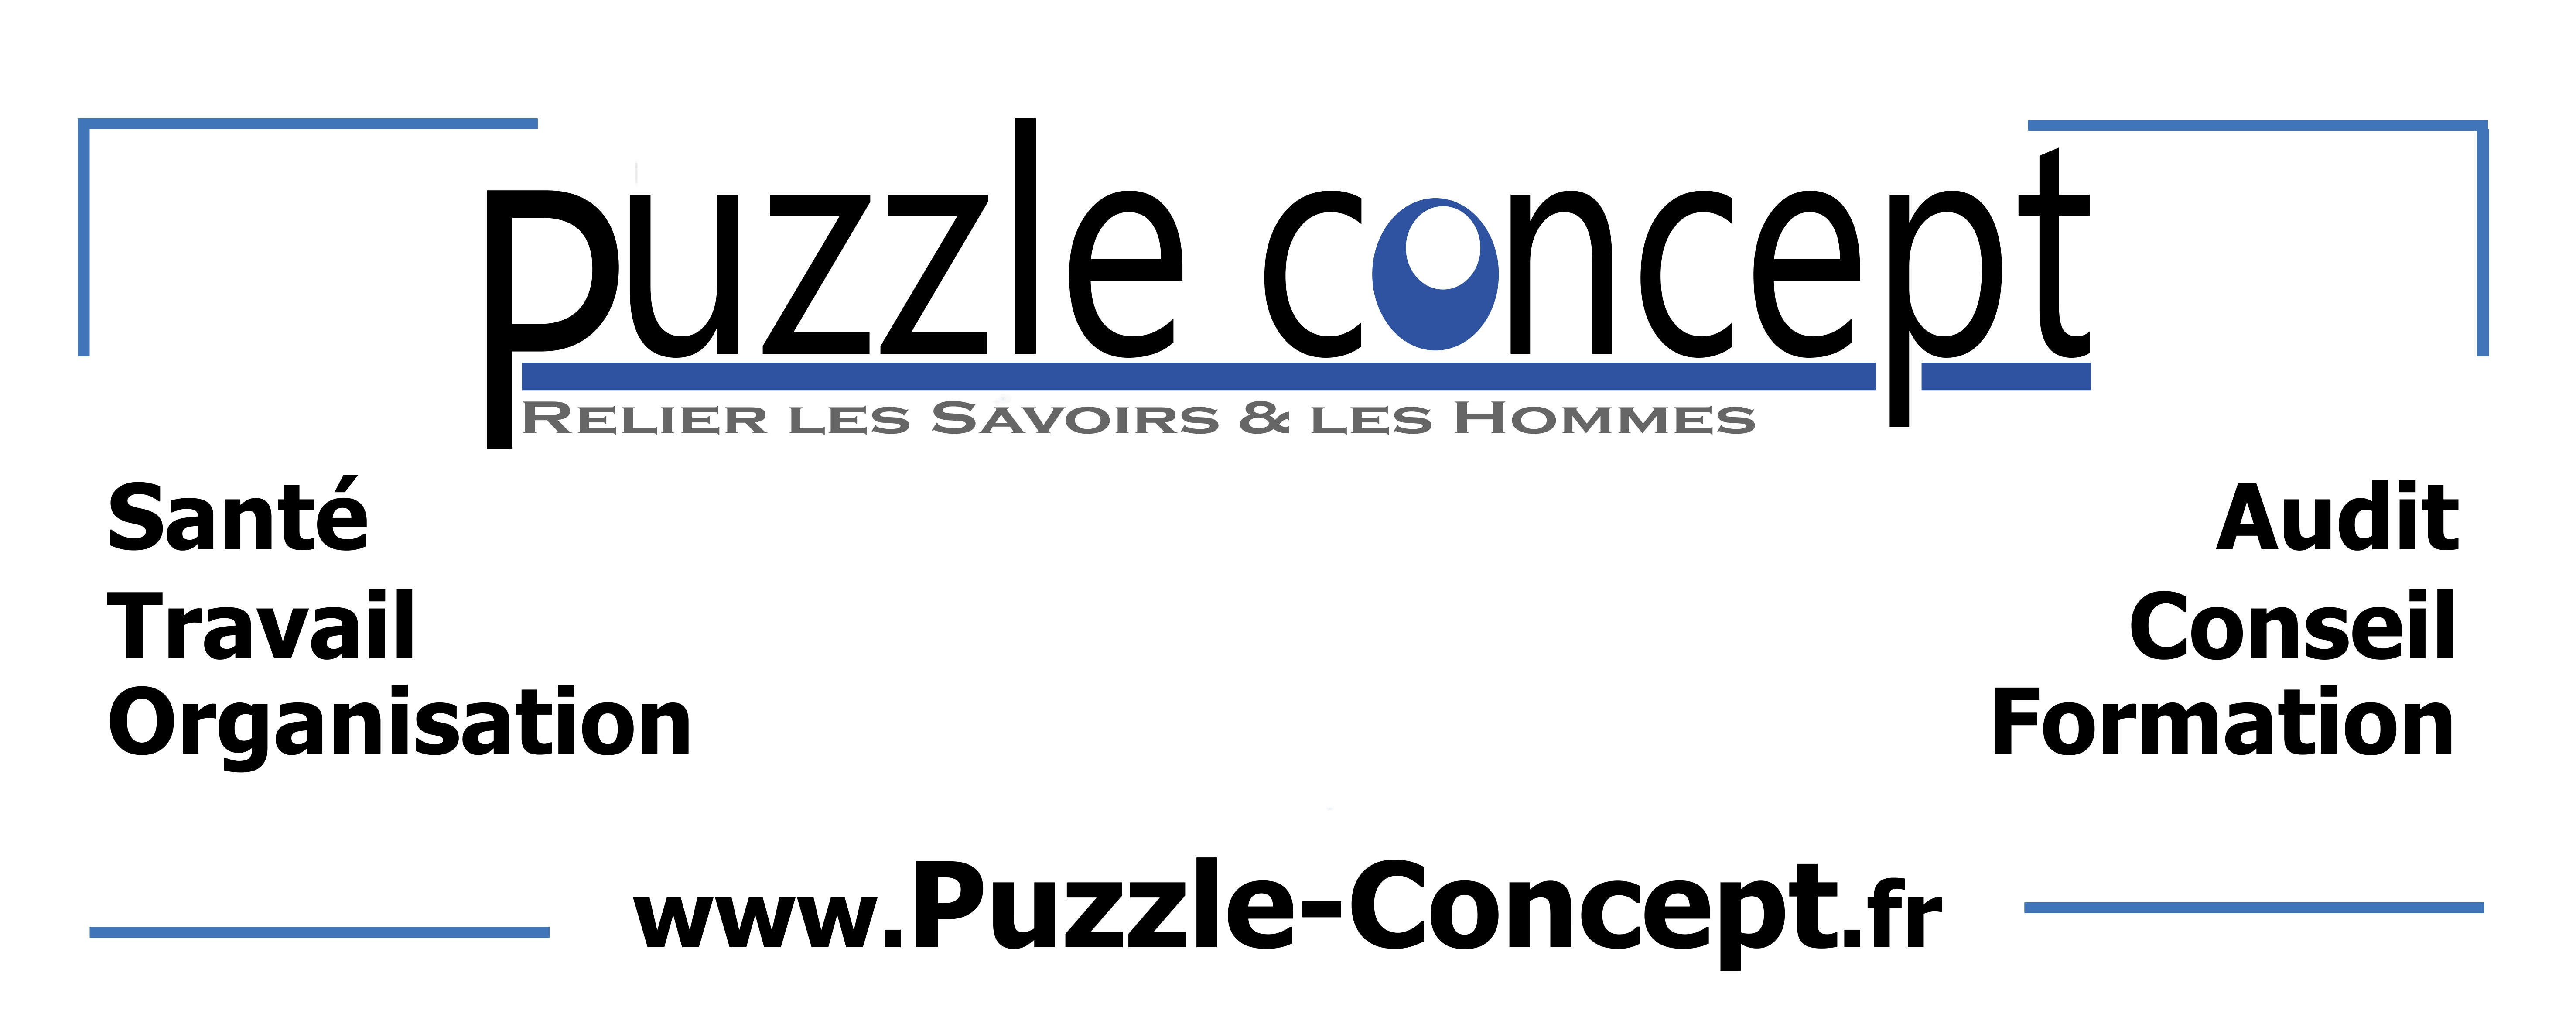 bandeau de l'entreprise puzzle-concept avec les valeurs qu'elle promeut.